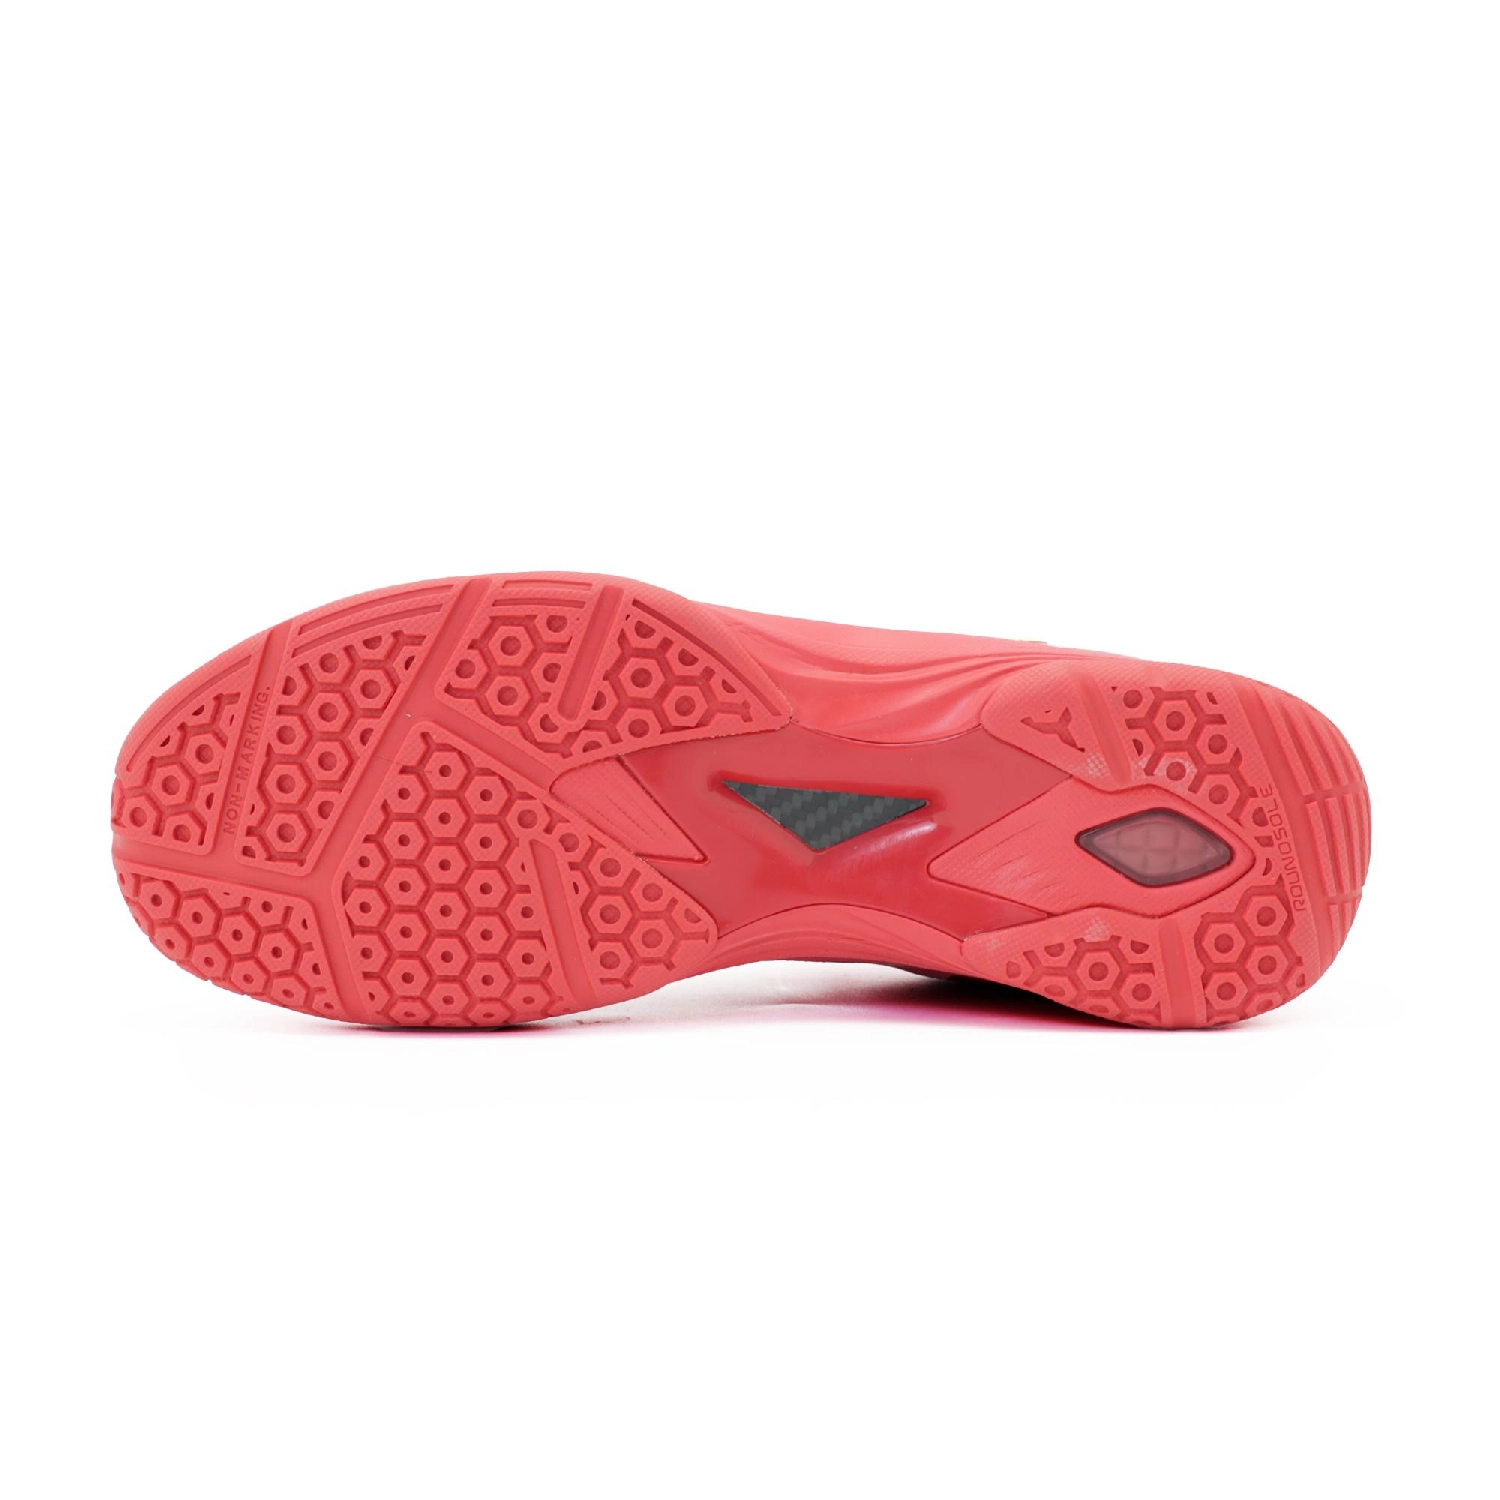 Giày cầu lông Yonex Blaze 3 - Red chính hãng